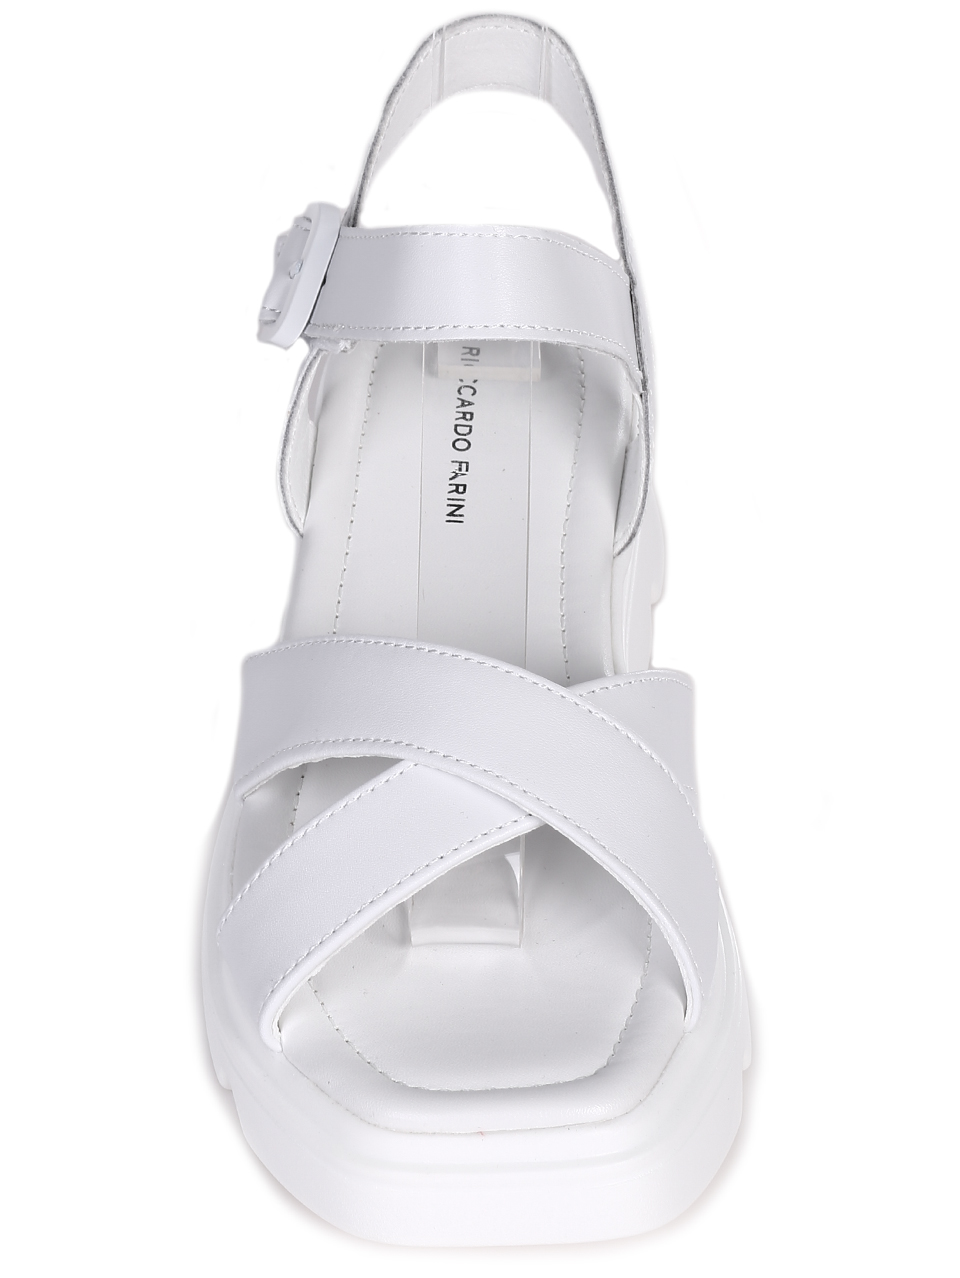 Ежедневни дамски сандали на платформа от естествена кожа 4AF-23158 white